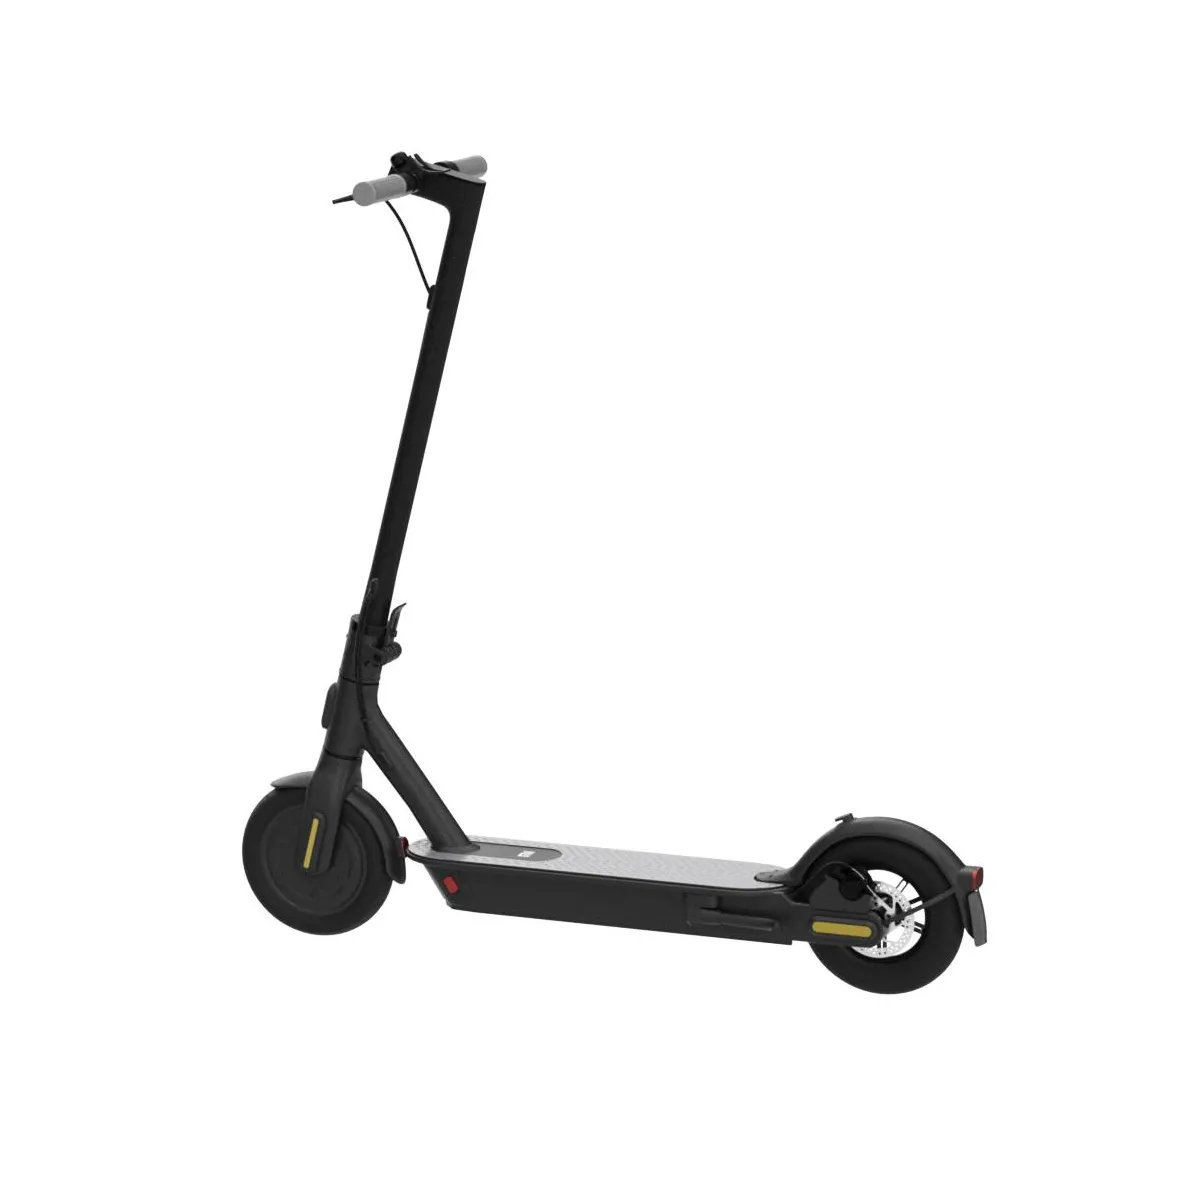 Scooter eléctrico plegable de alta calidad para adultos a la venta con la mejor oferta de precio en el mercado